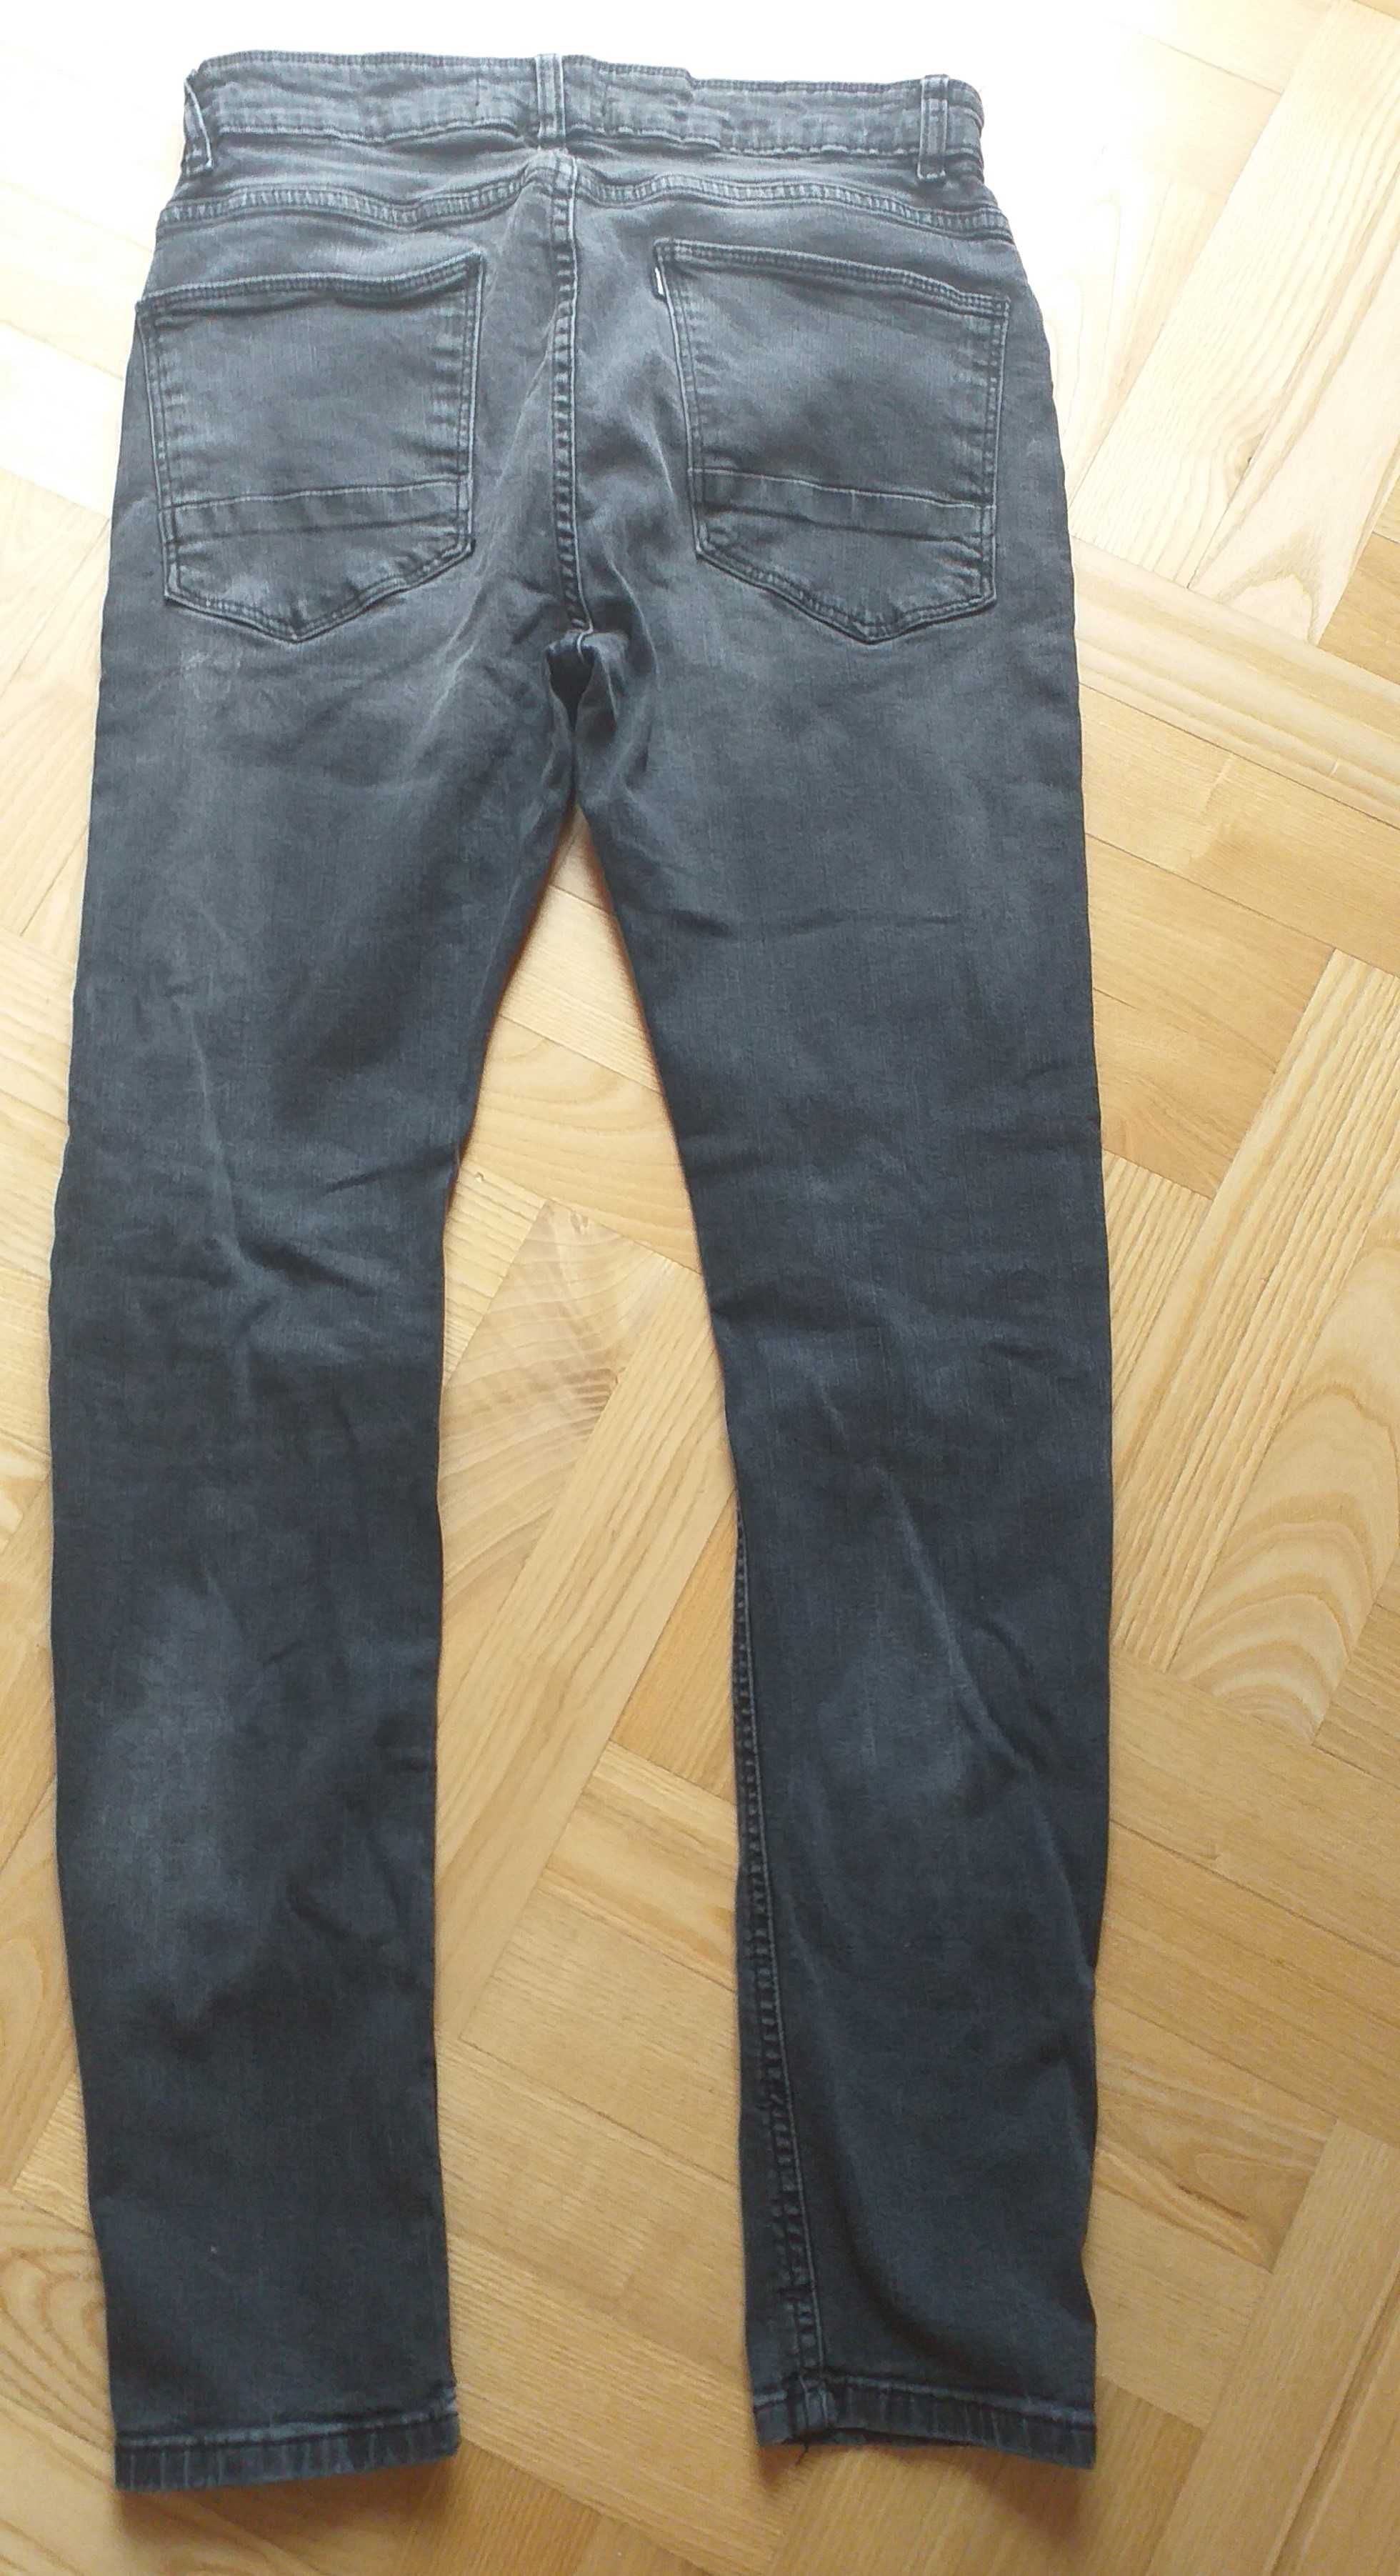 2 pary za 20 zł - Spodnie jeans House chłopięce 28/30 - czarne